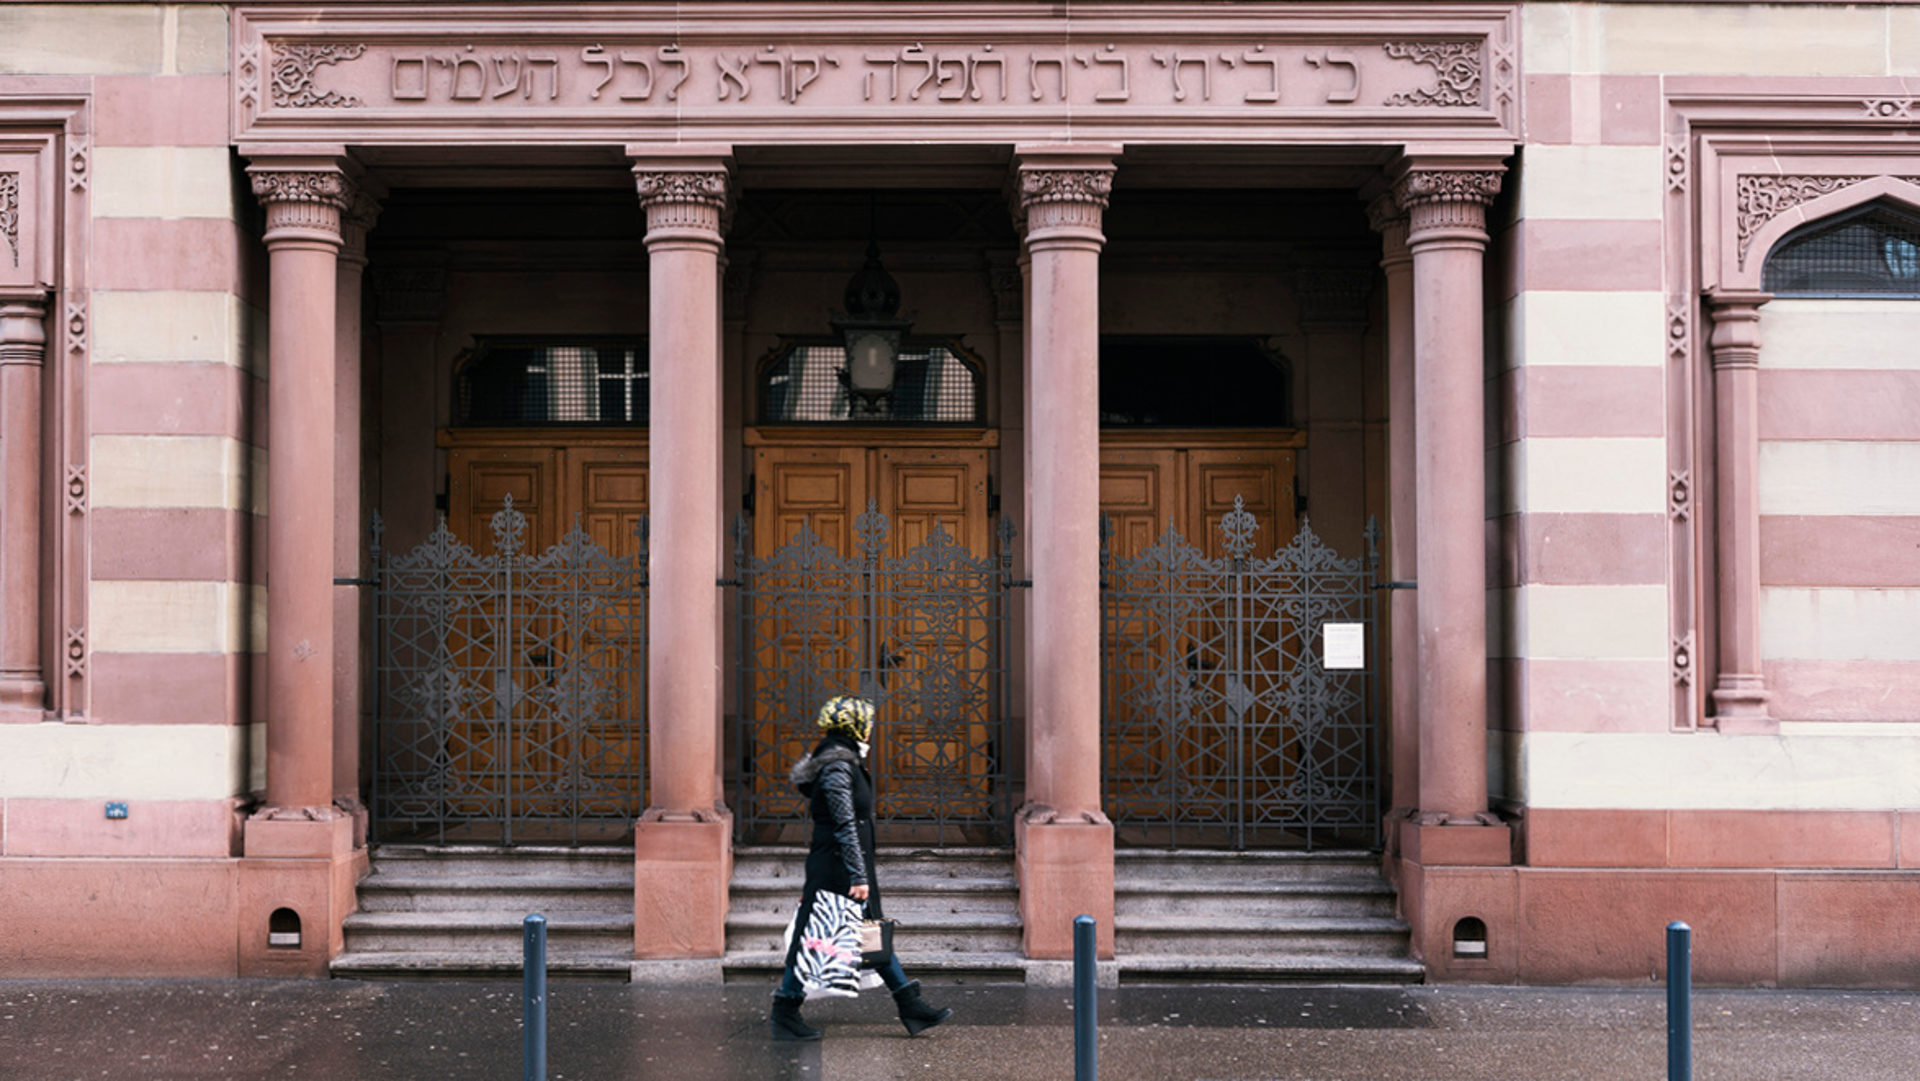 Kameras überwachen die Fassade der Synagoge der Israelitischen Cultusgemeinde Zuerich in Zürich